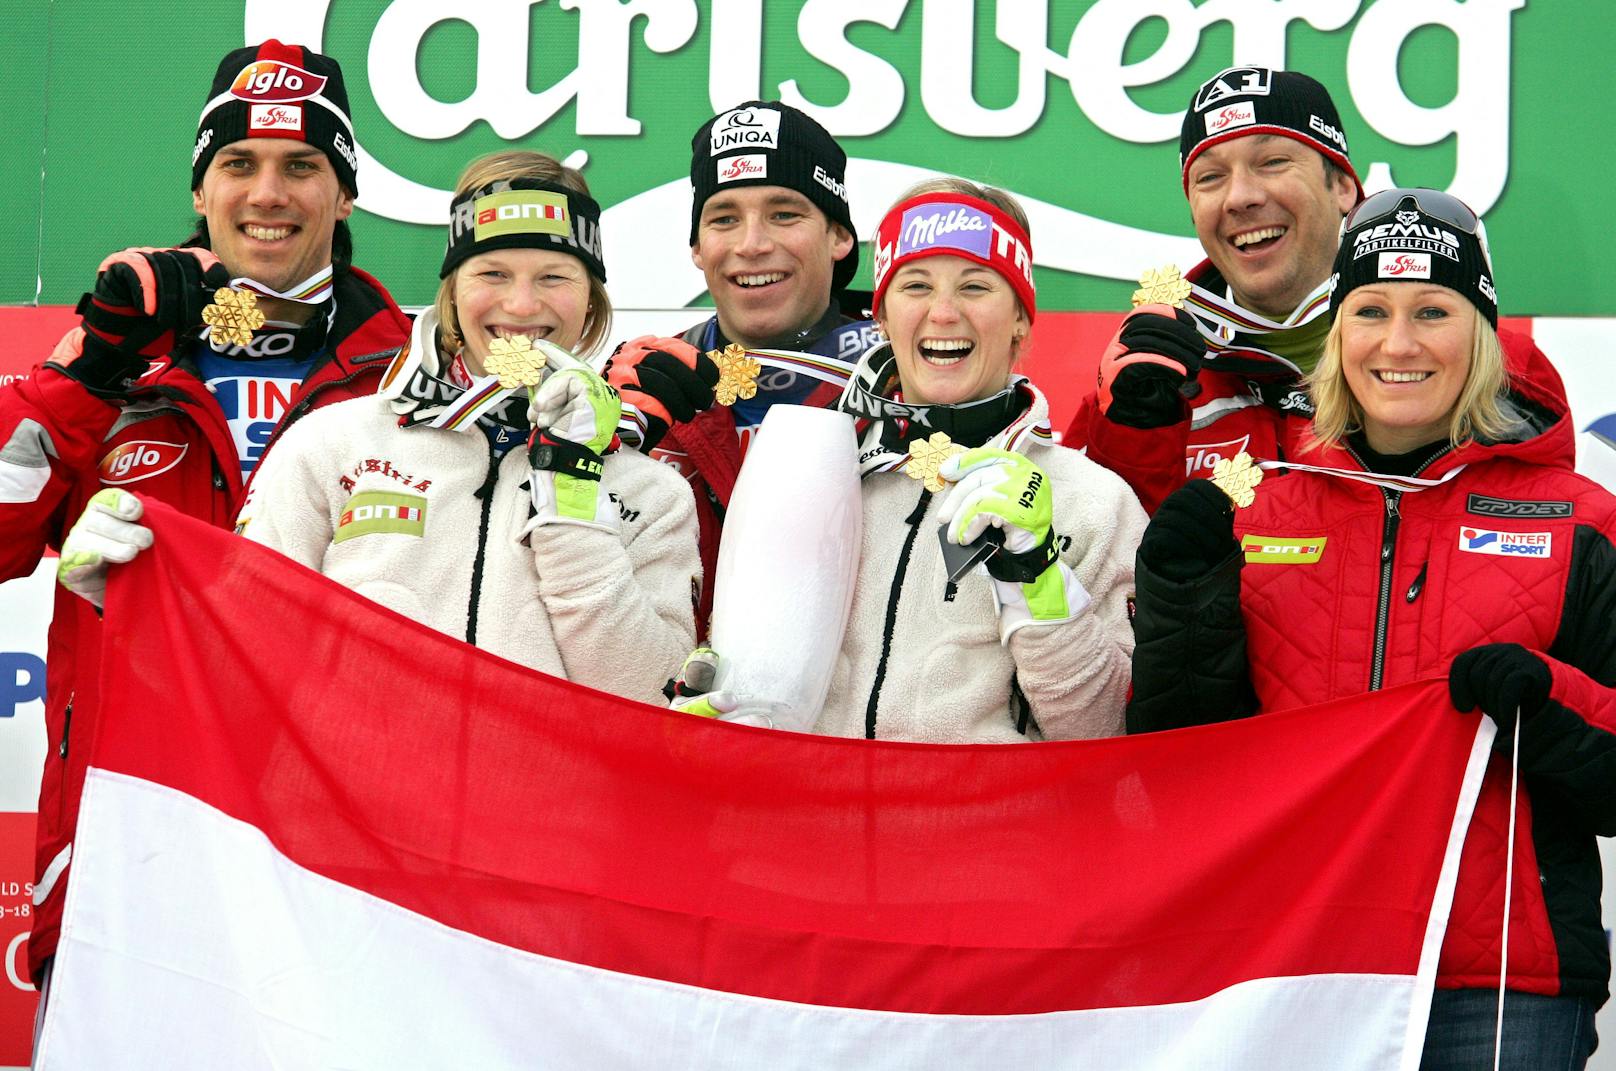 Bei der Ski-WM 2007 in Aare holt Kirchi mit dem Team die Goldmedaille.